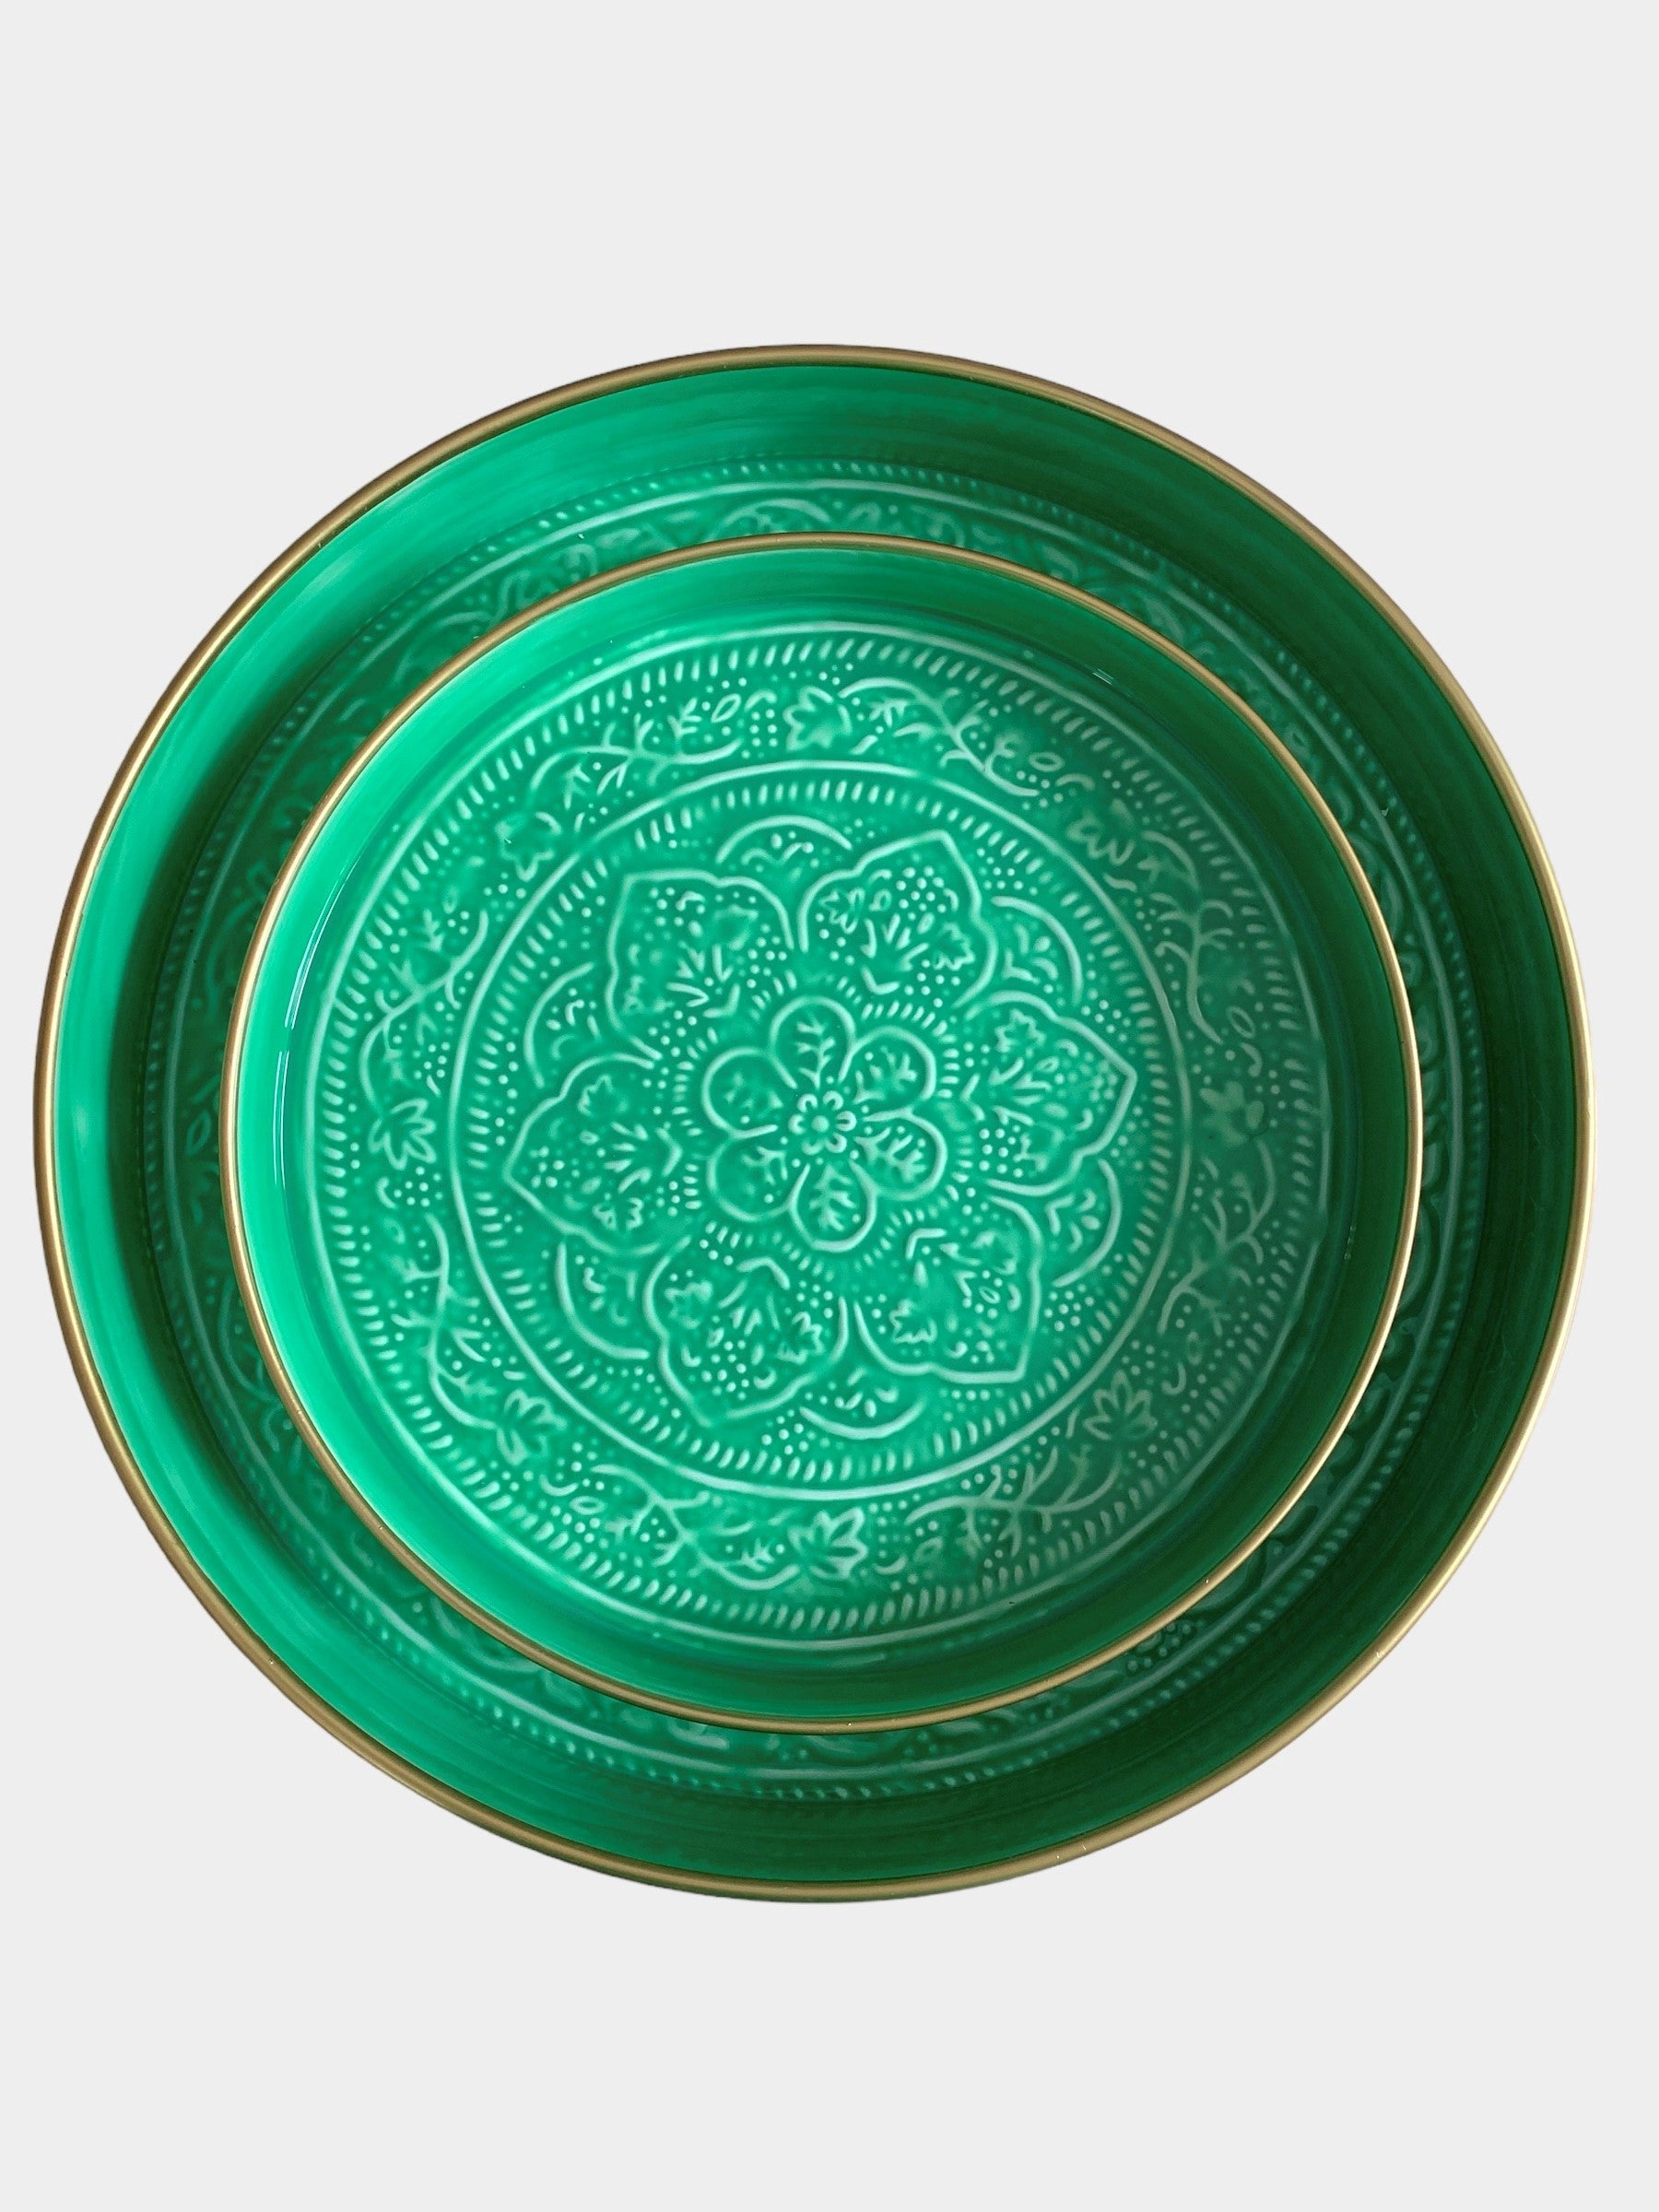 A medium sized green enamel tray sitting inside a larger sized green enamel tray.